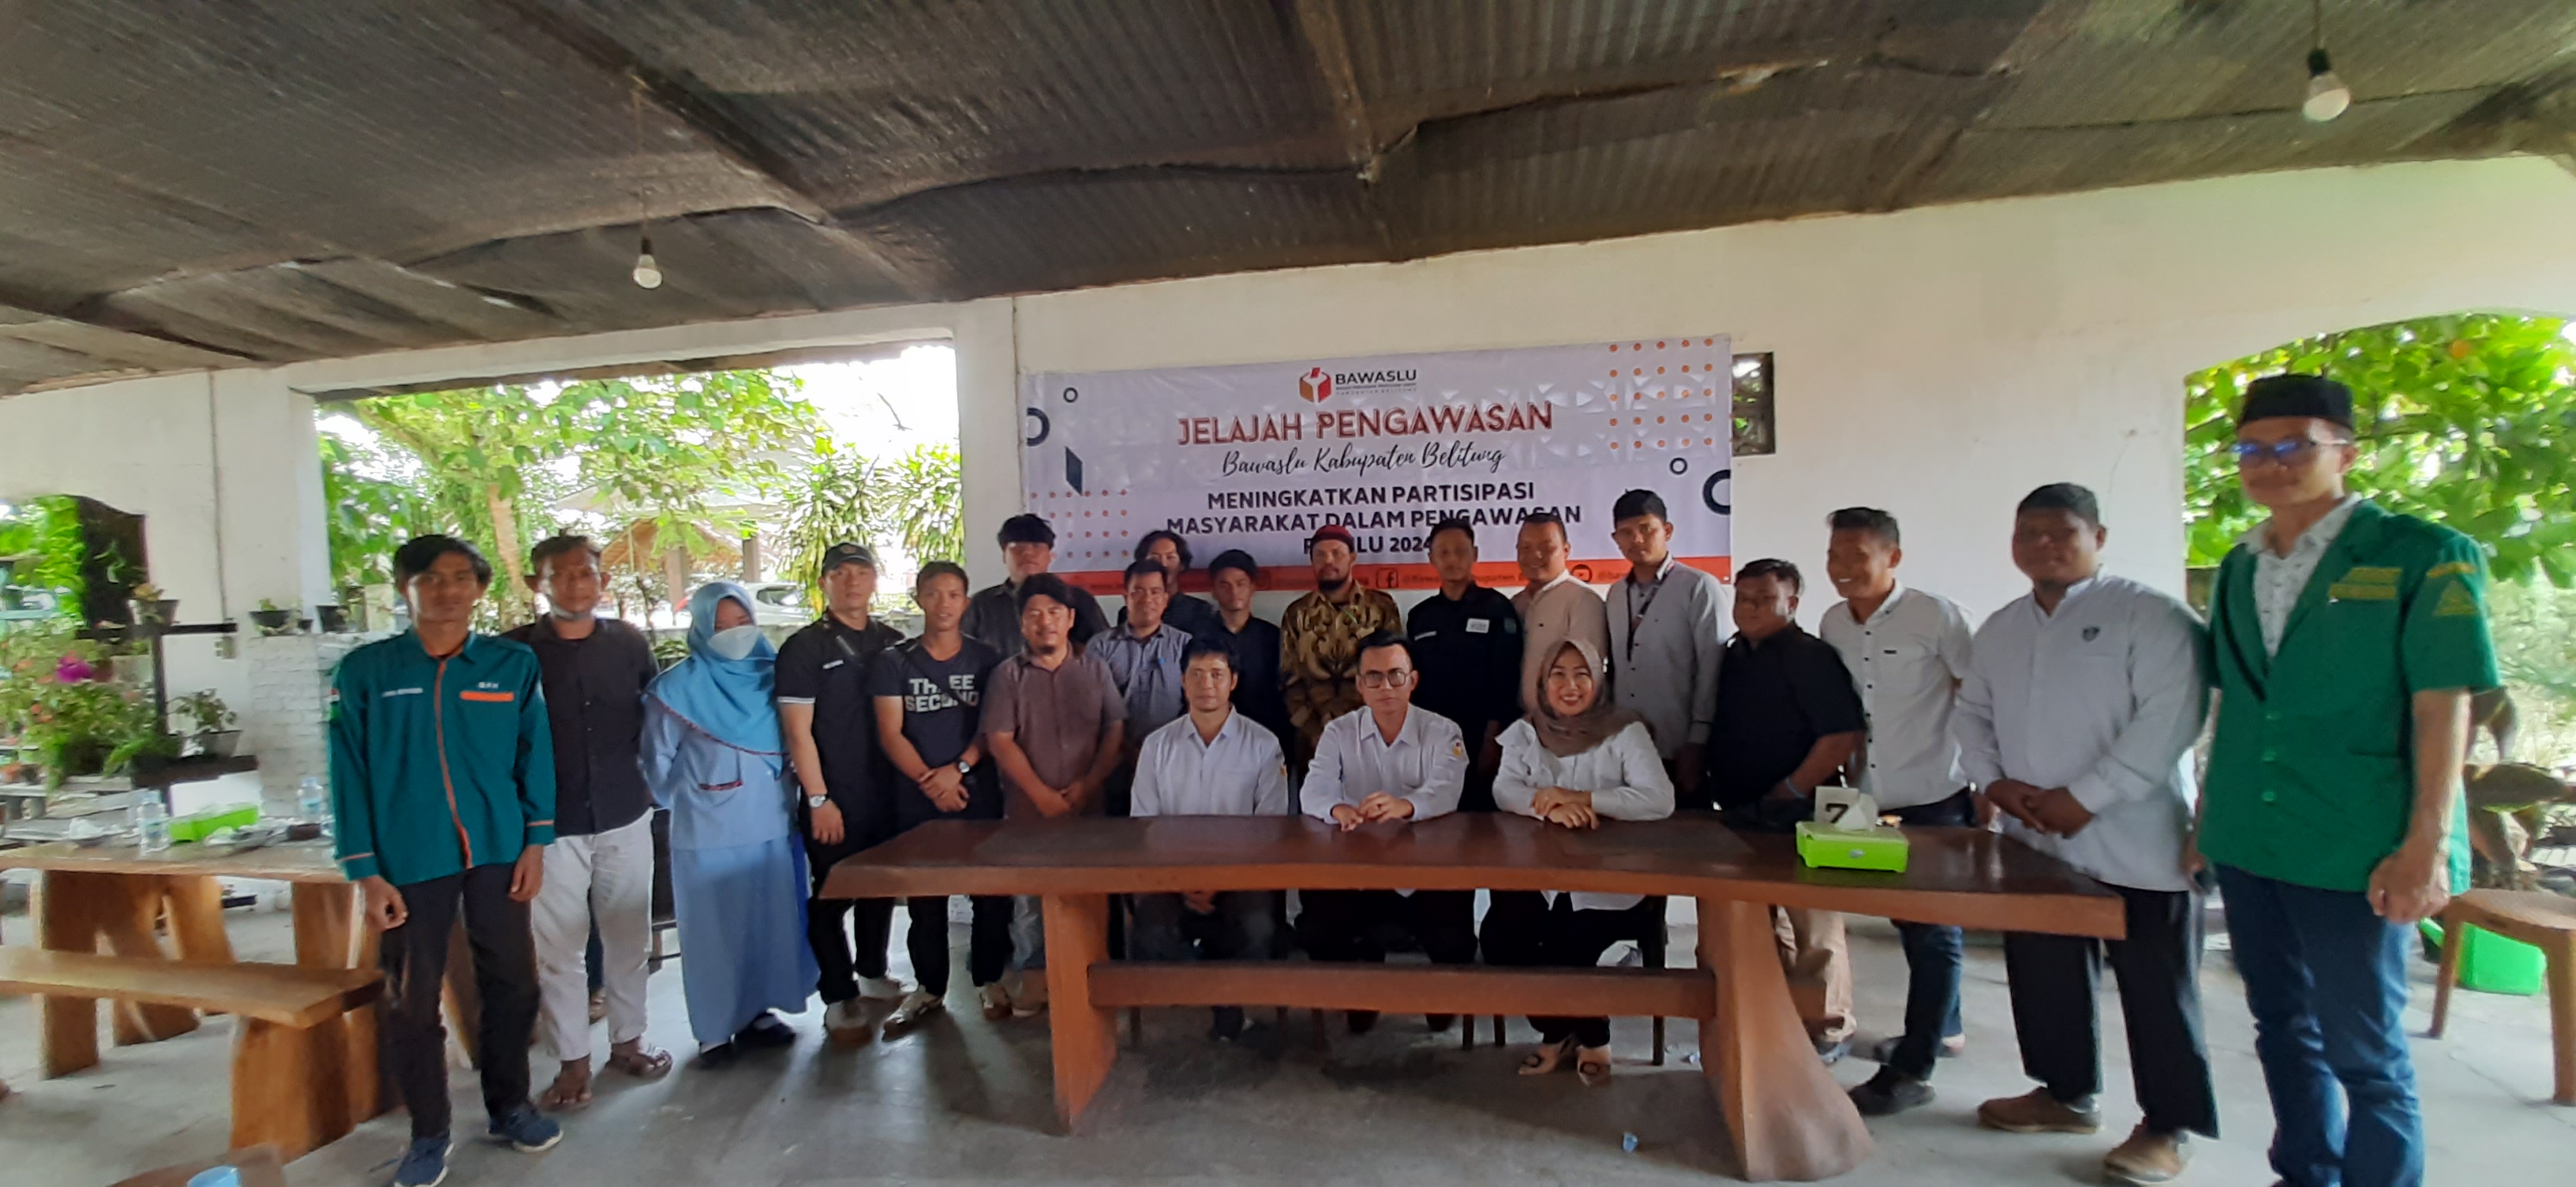 Ajak Masyarakat Awasi Pemilu, Bawaslu Belitung Gelar Acara Jelajah Pengawasan